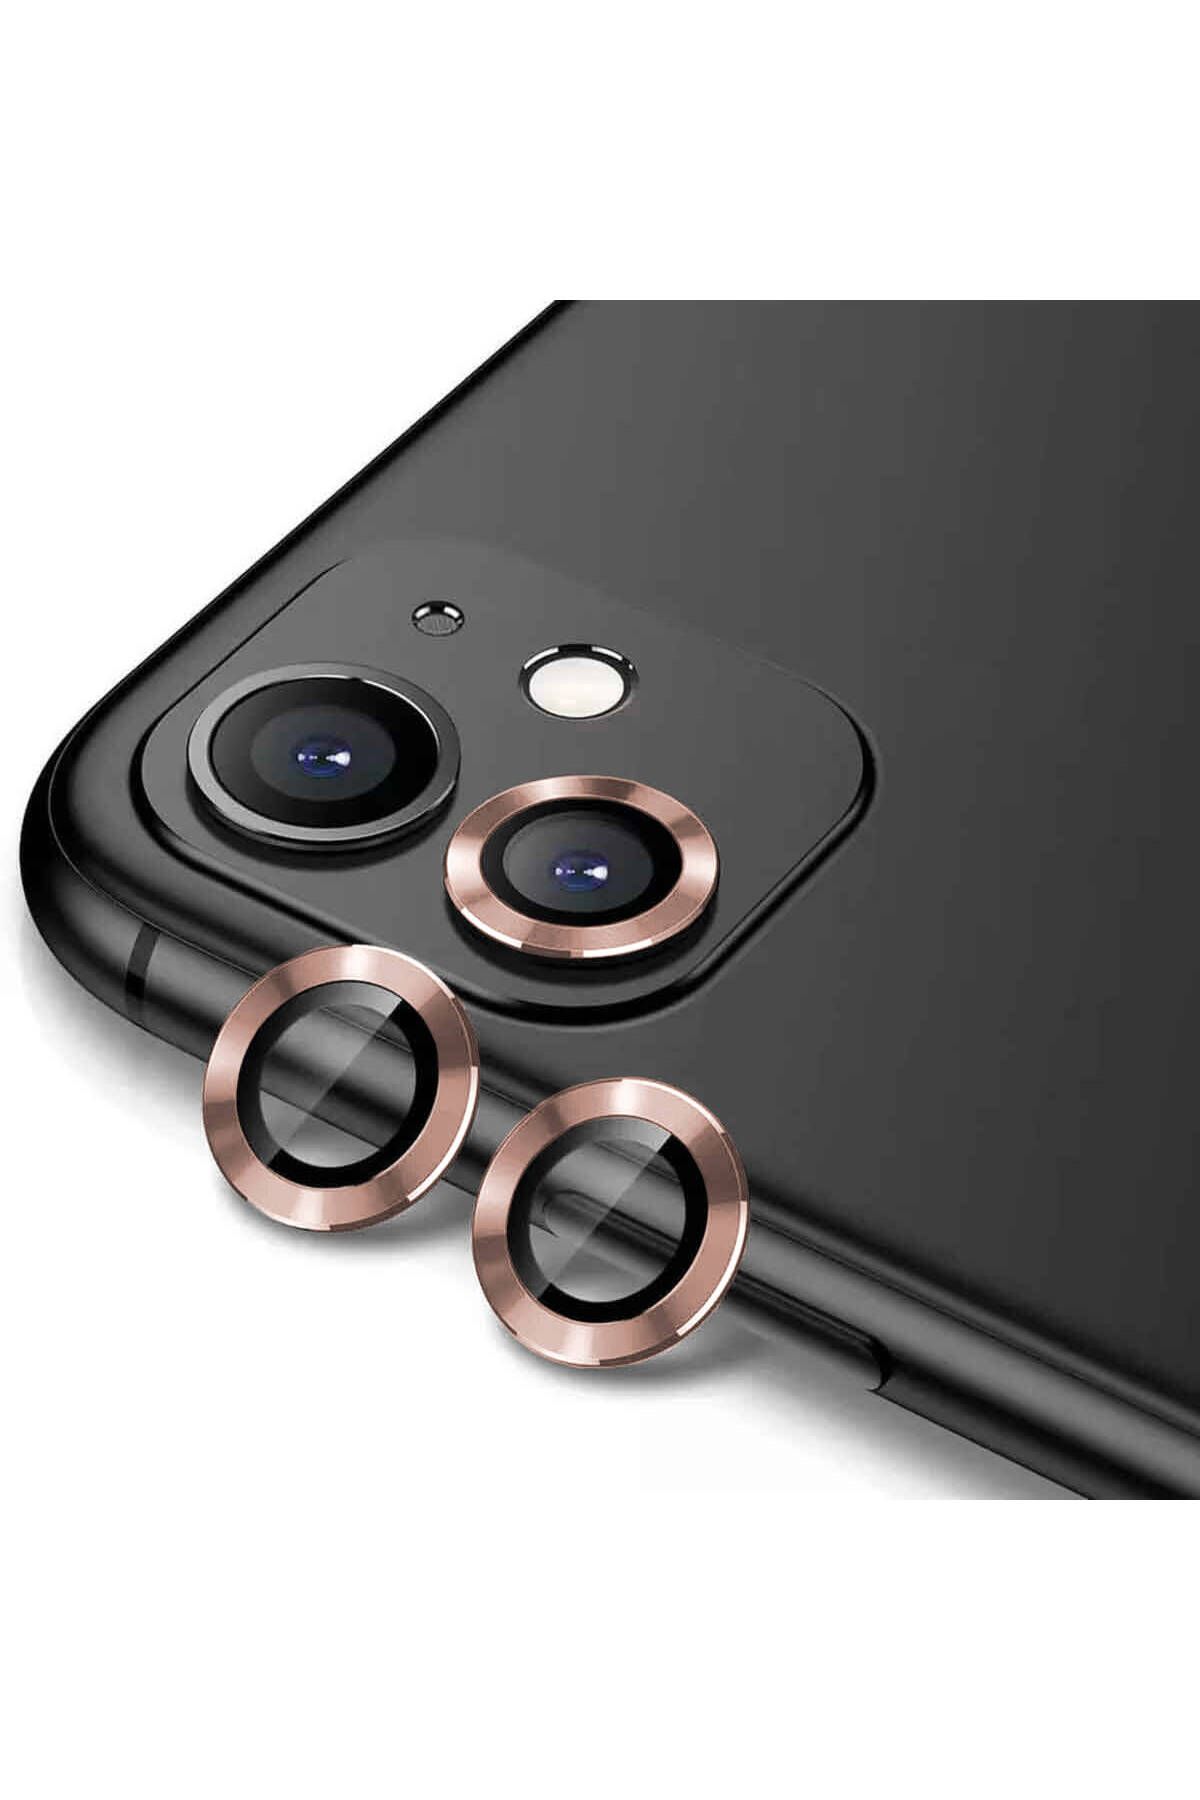 CEPCASE Apple iPhone 12 Mini Kamera Lens Koruyucu Exclusive Premium Sapphire Tak Yapıştır Lens Koruma